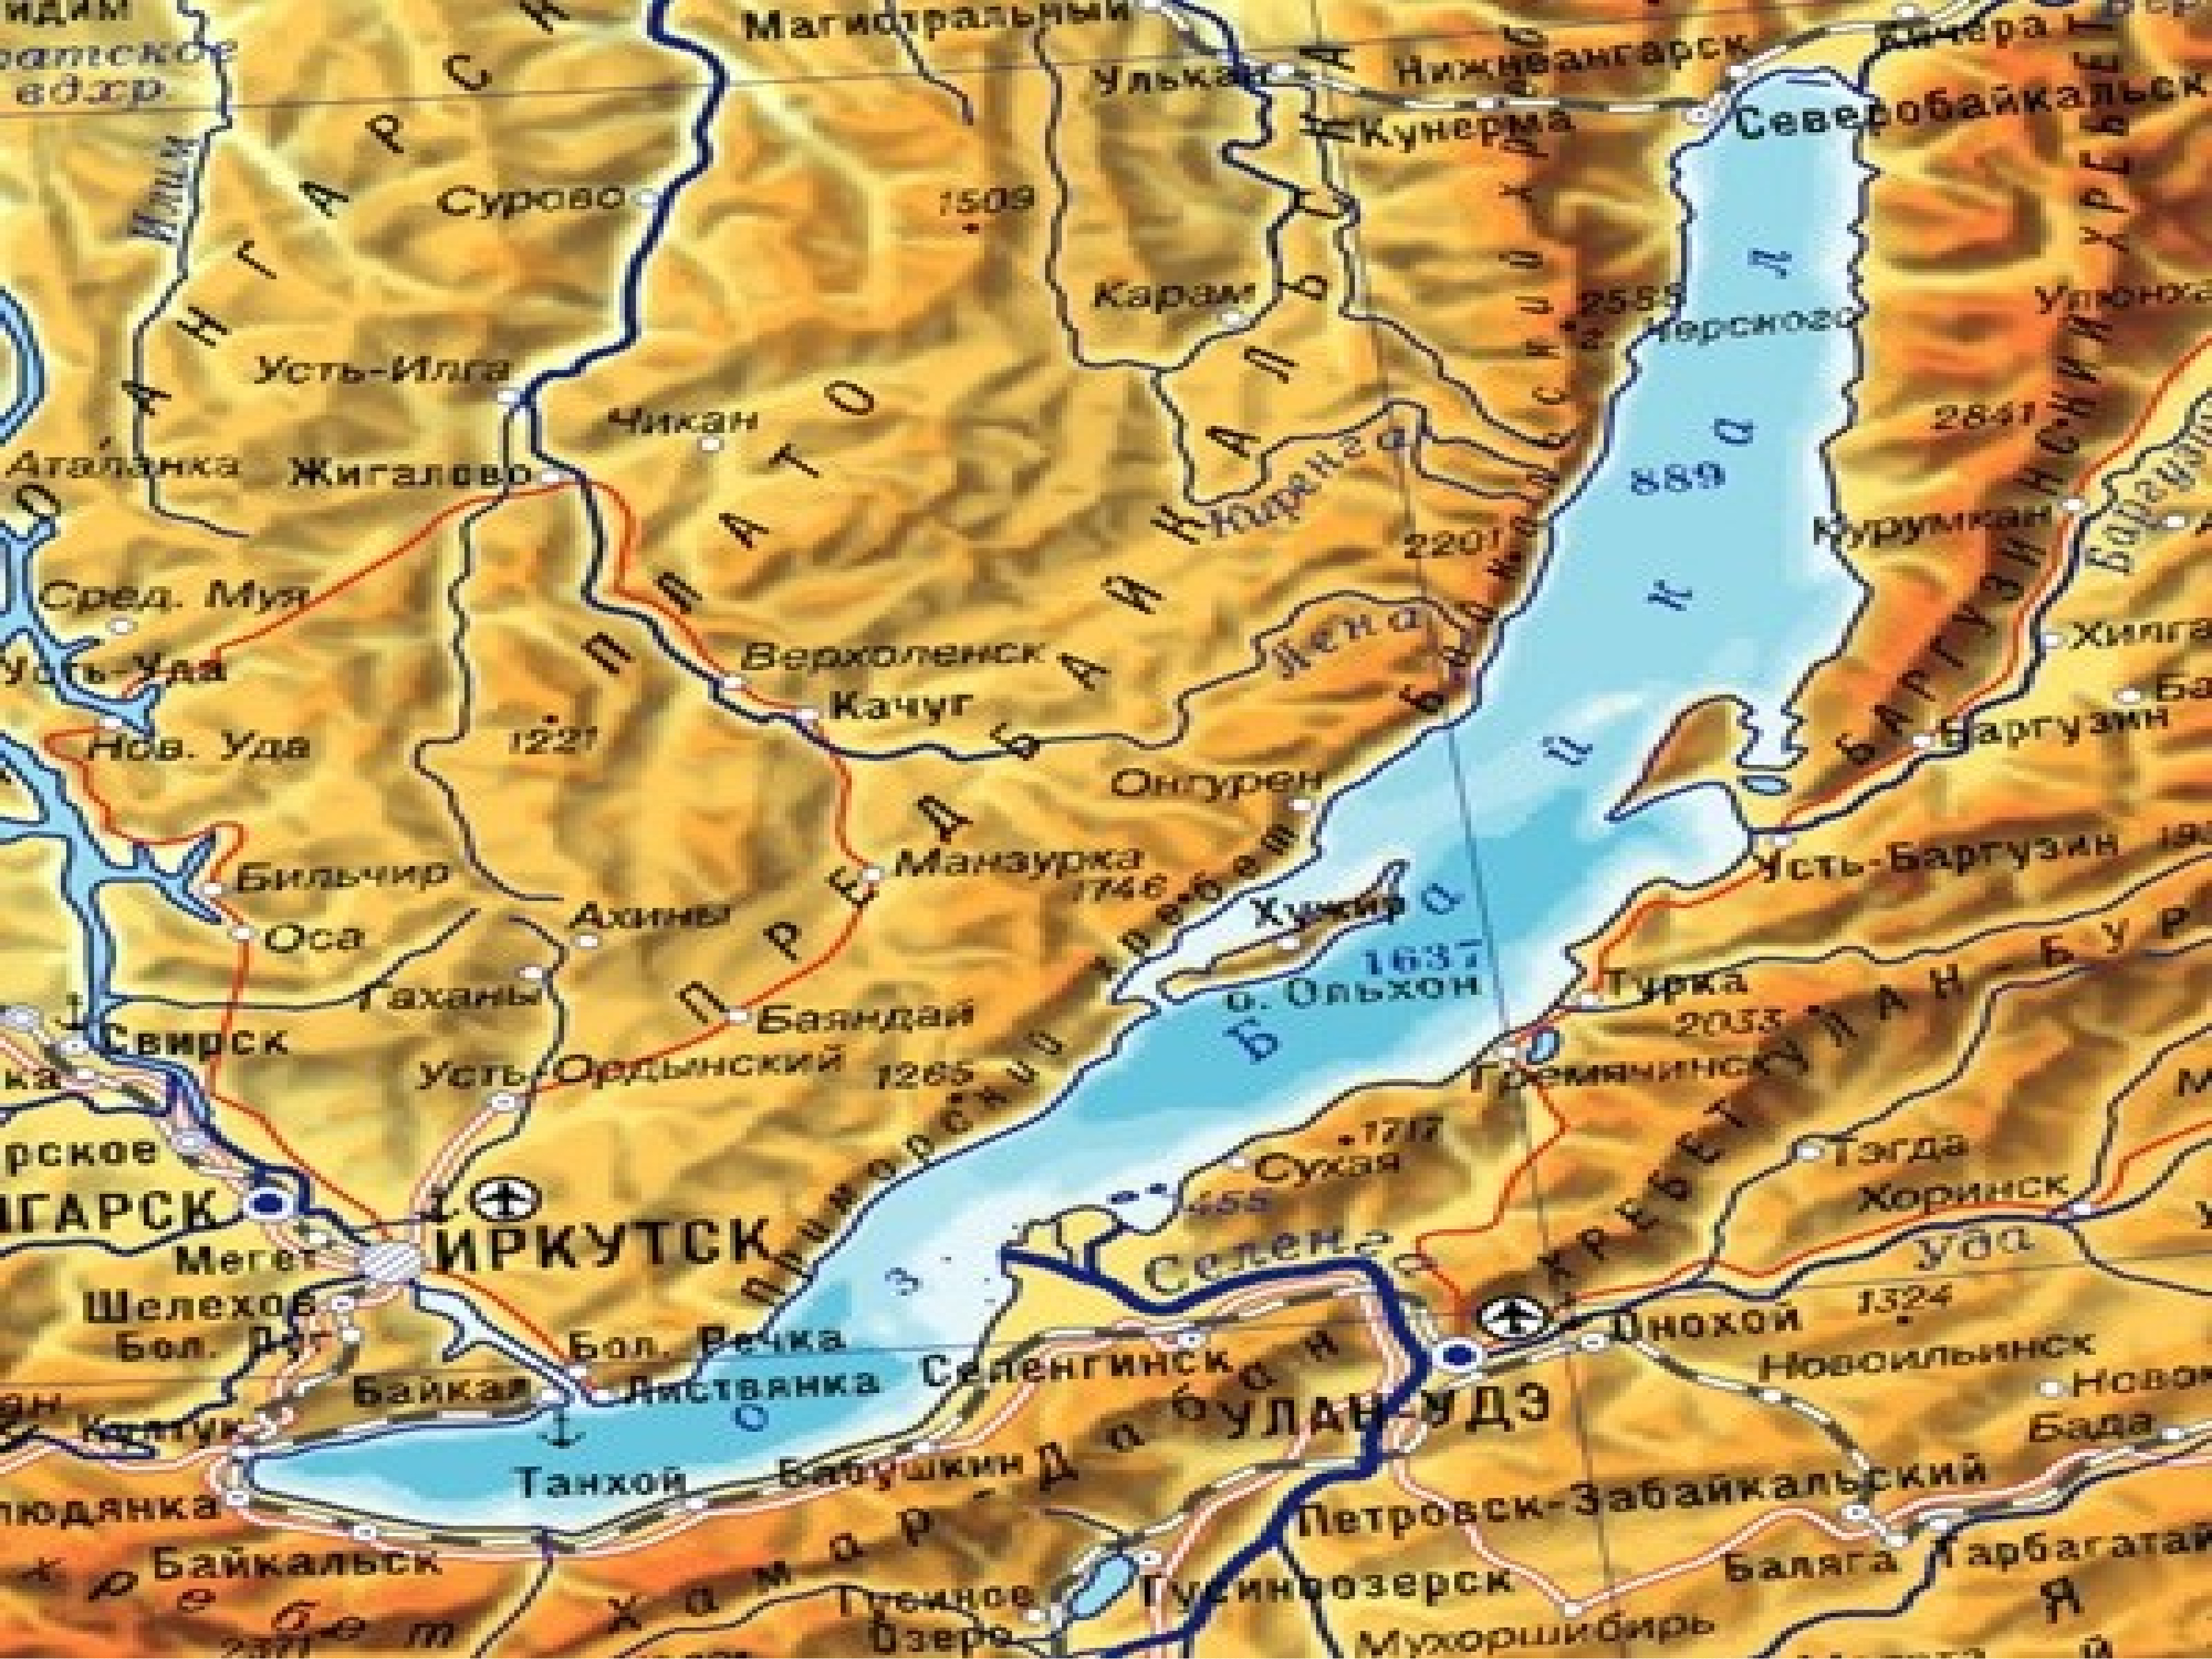 Где расположено озеро байкал на карте. Озеро Байкал на карте. Озеро Байкал карта географическая. Географическое положение озера Байкал. Карта озеро Байкал на карте.